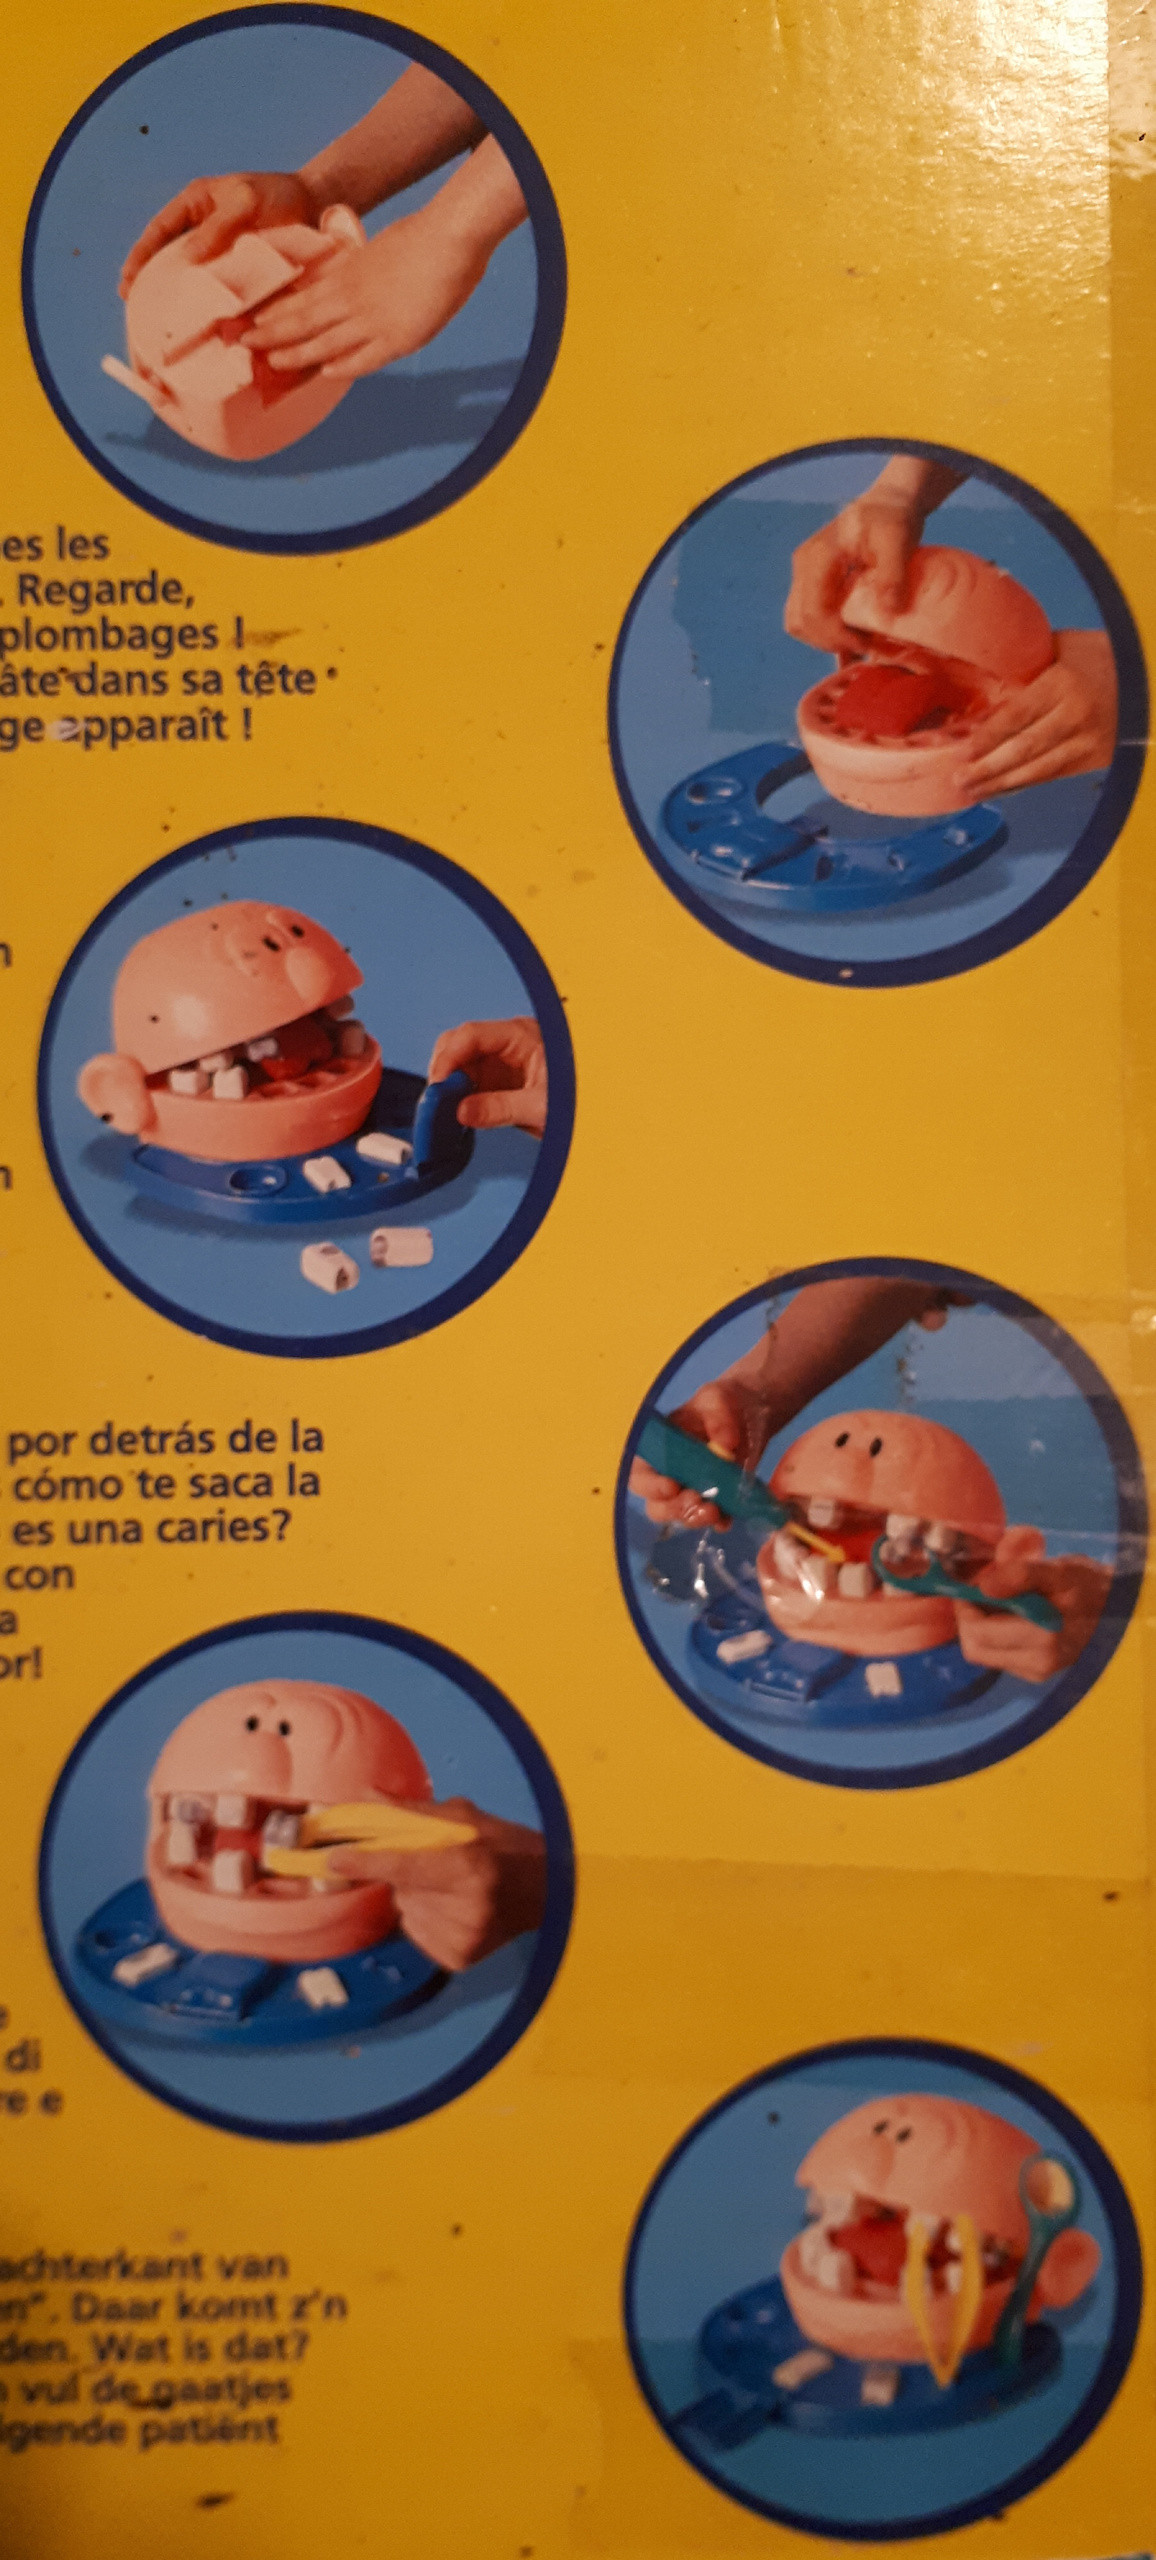 Le dentiste Play-Doh en très bon état sur Gens de Confiance